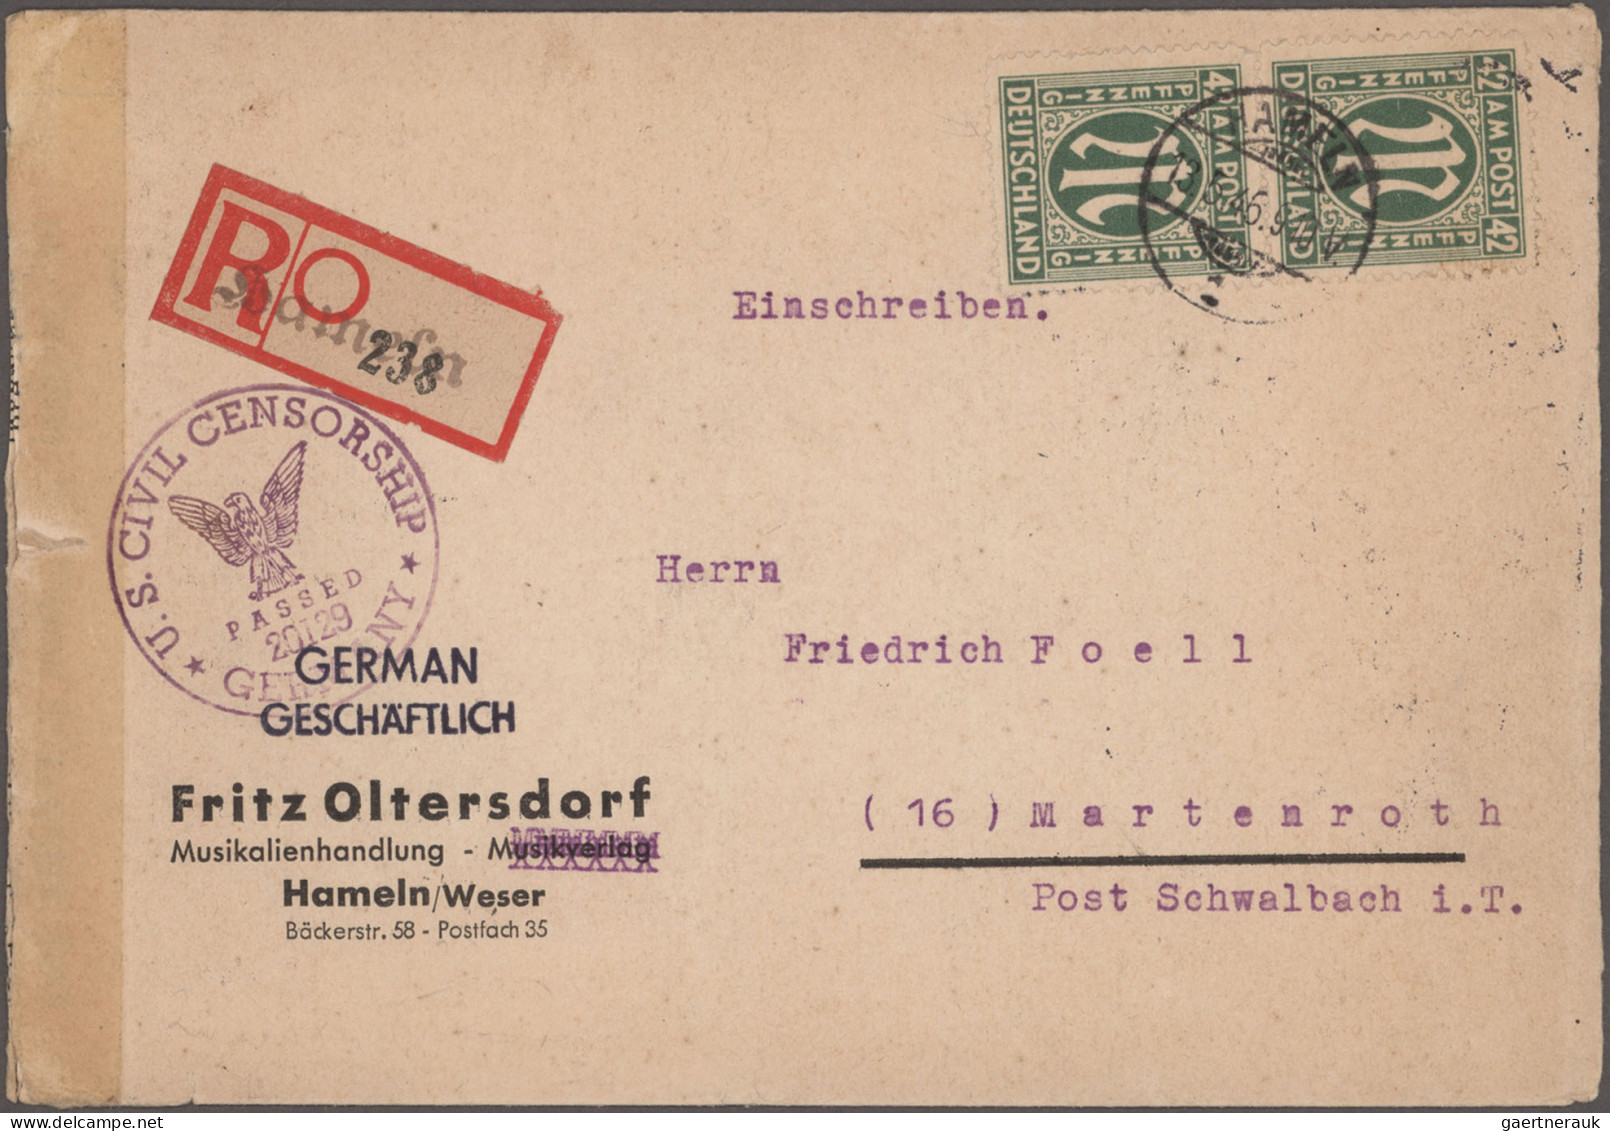 Bizone: 1945/1946, AM-Post deutscher Druck, sehr interessante und werthaltige Ko